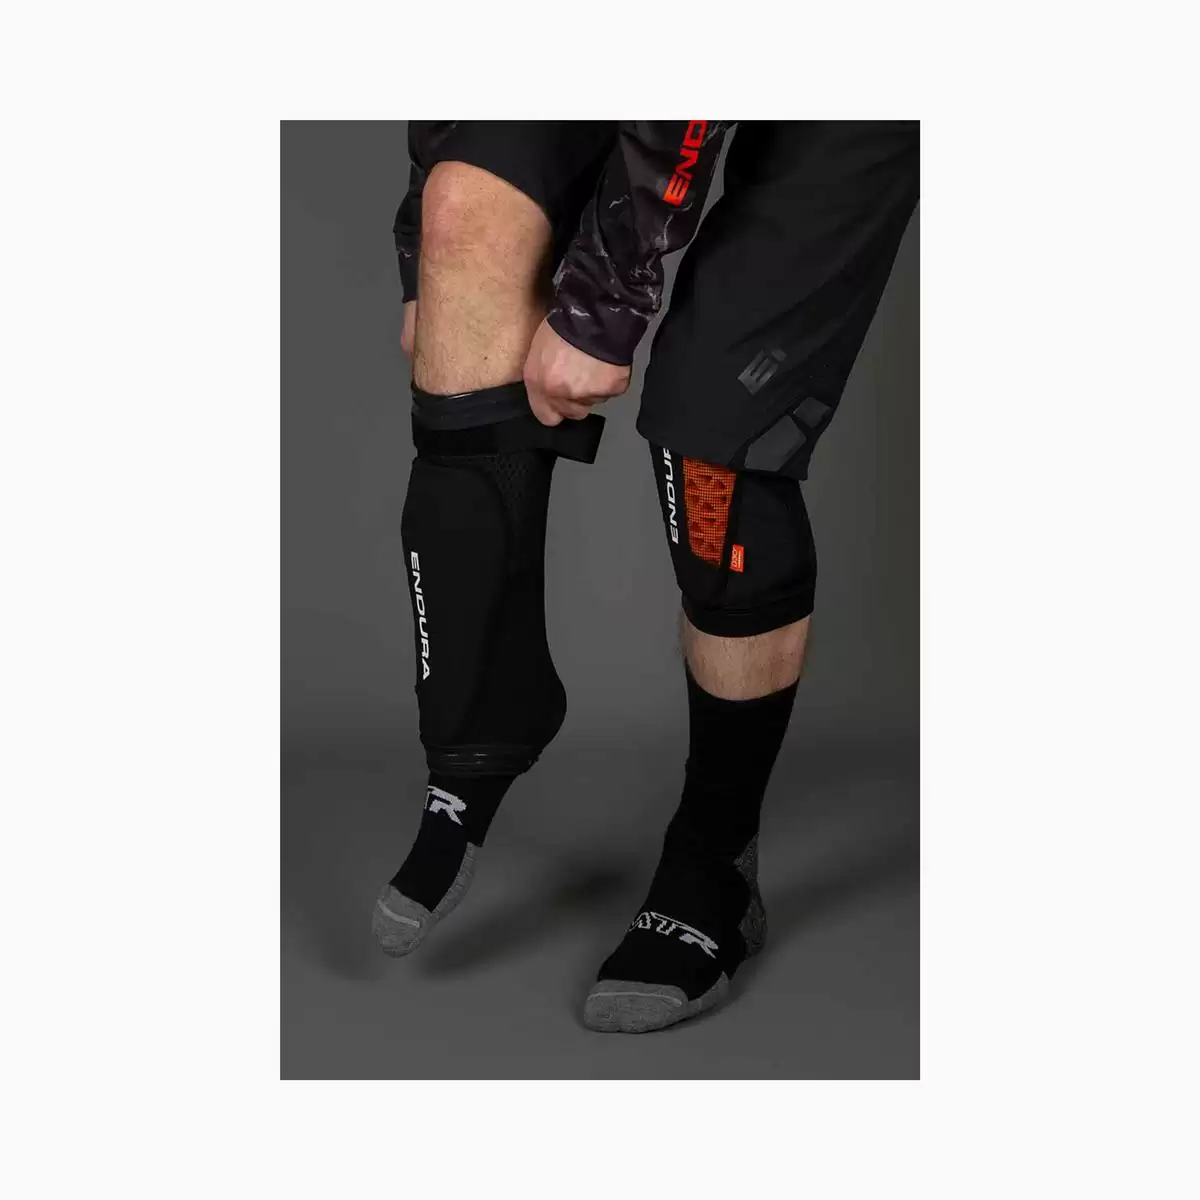 MT500 Lite Knee Pads size M/L black #1